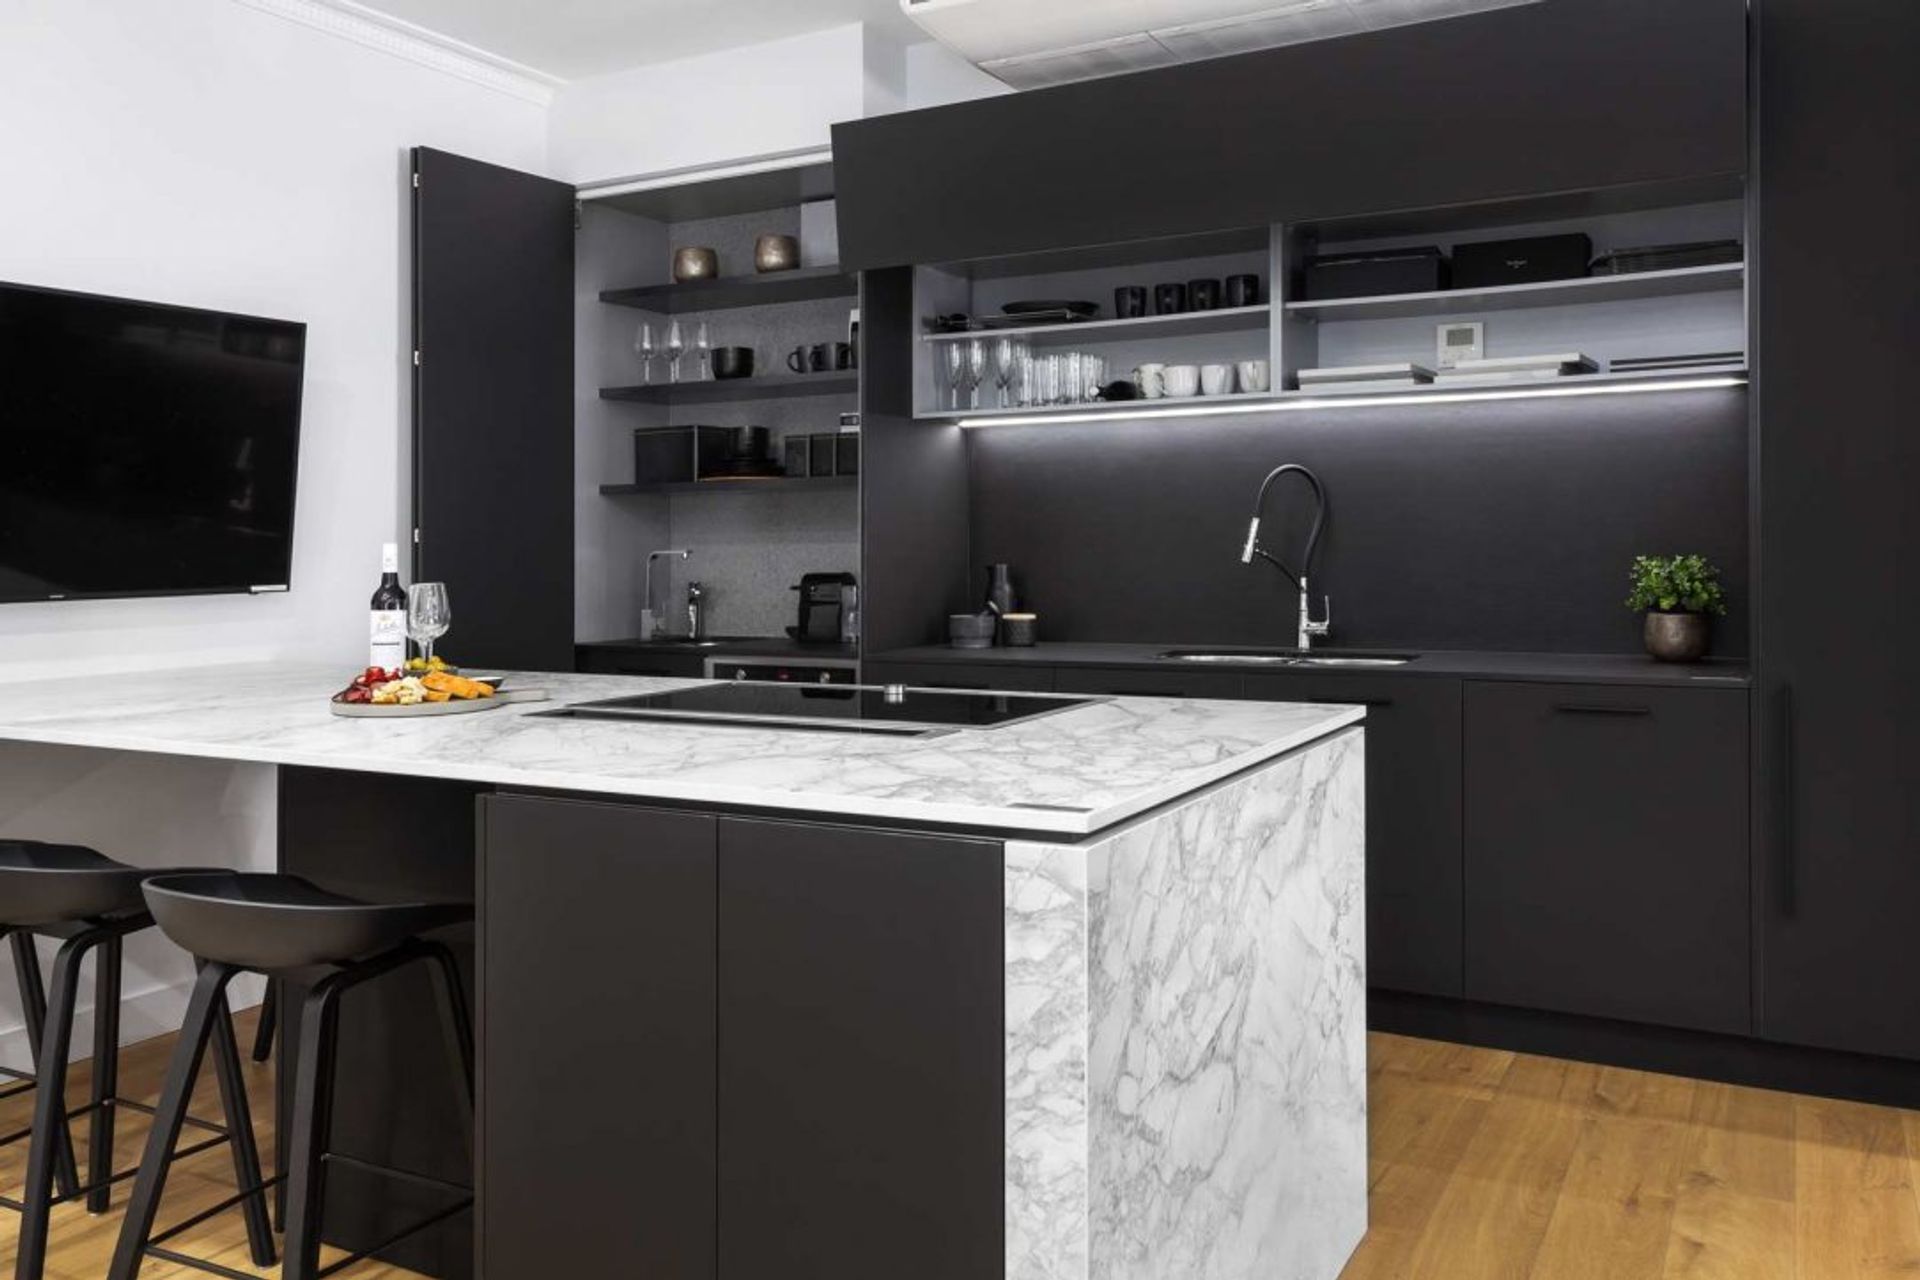 modern-kitchen-design-sydney-kitchen-showroom-dekton-portum-benchtop-black-cabinets-5-1084x723.jpg